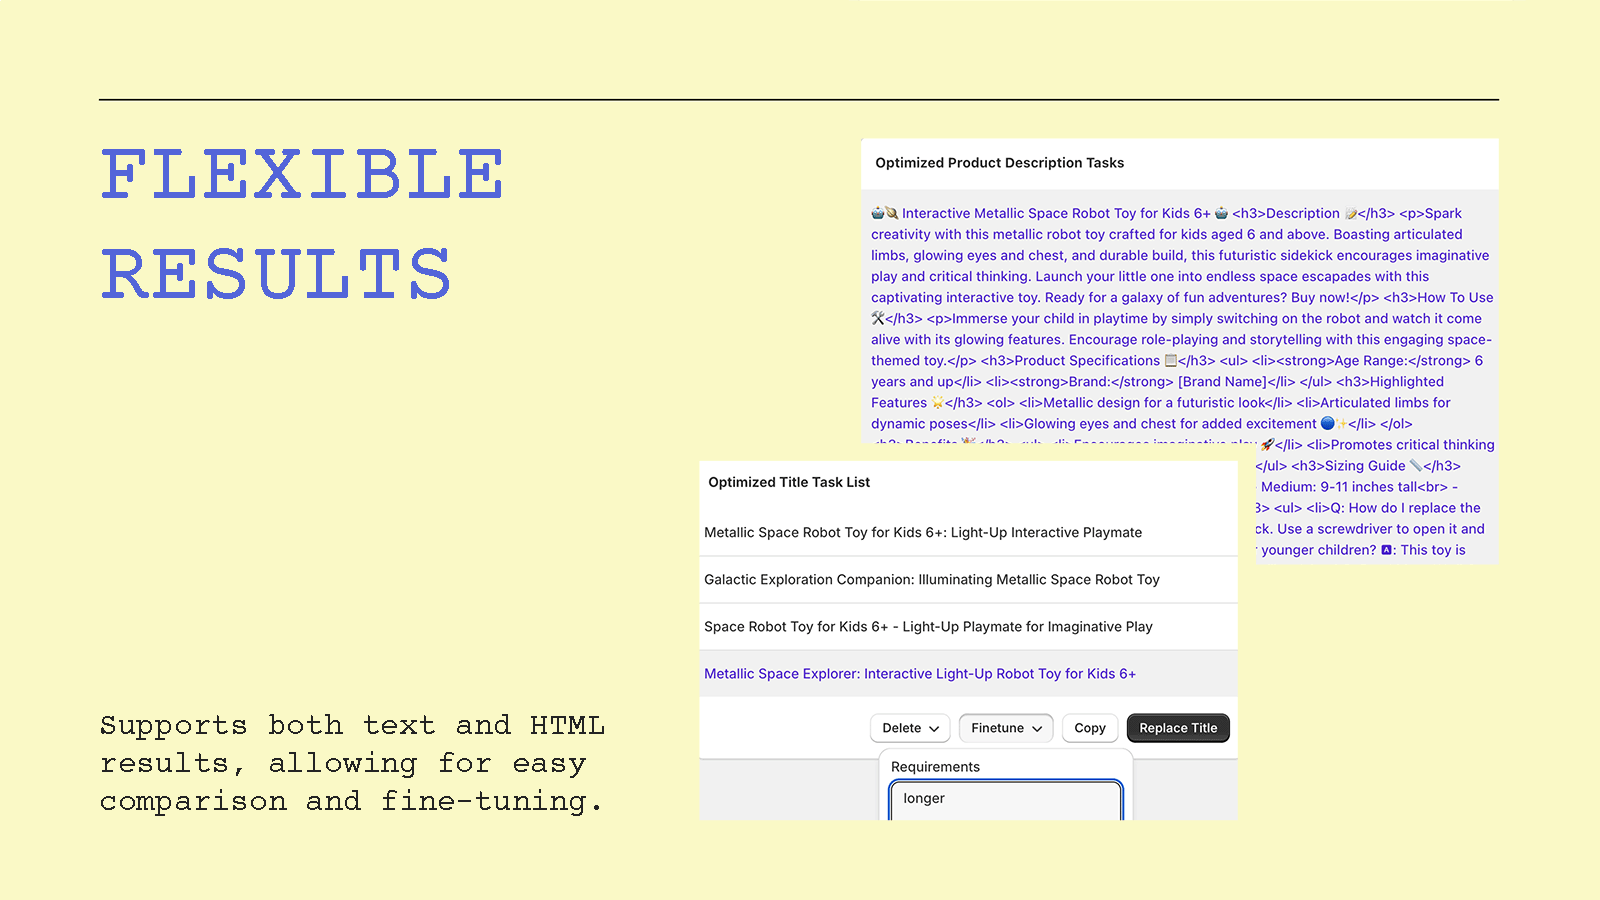 Ergebnisse in Text & HTML für einfachen Vergleich.